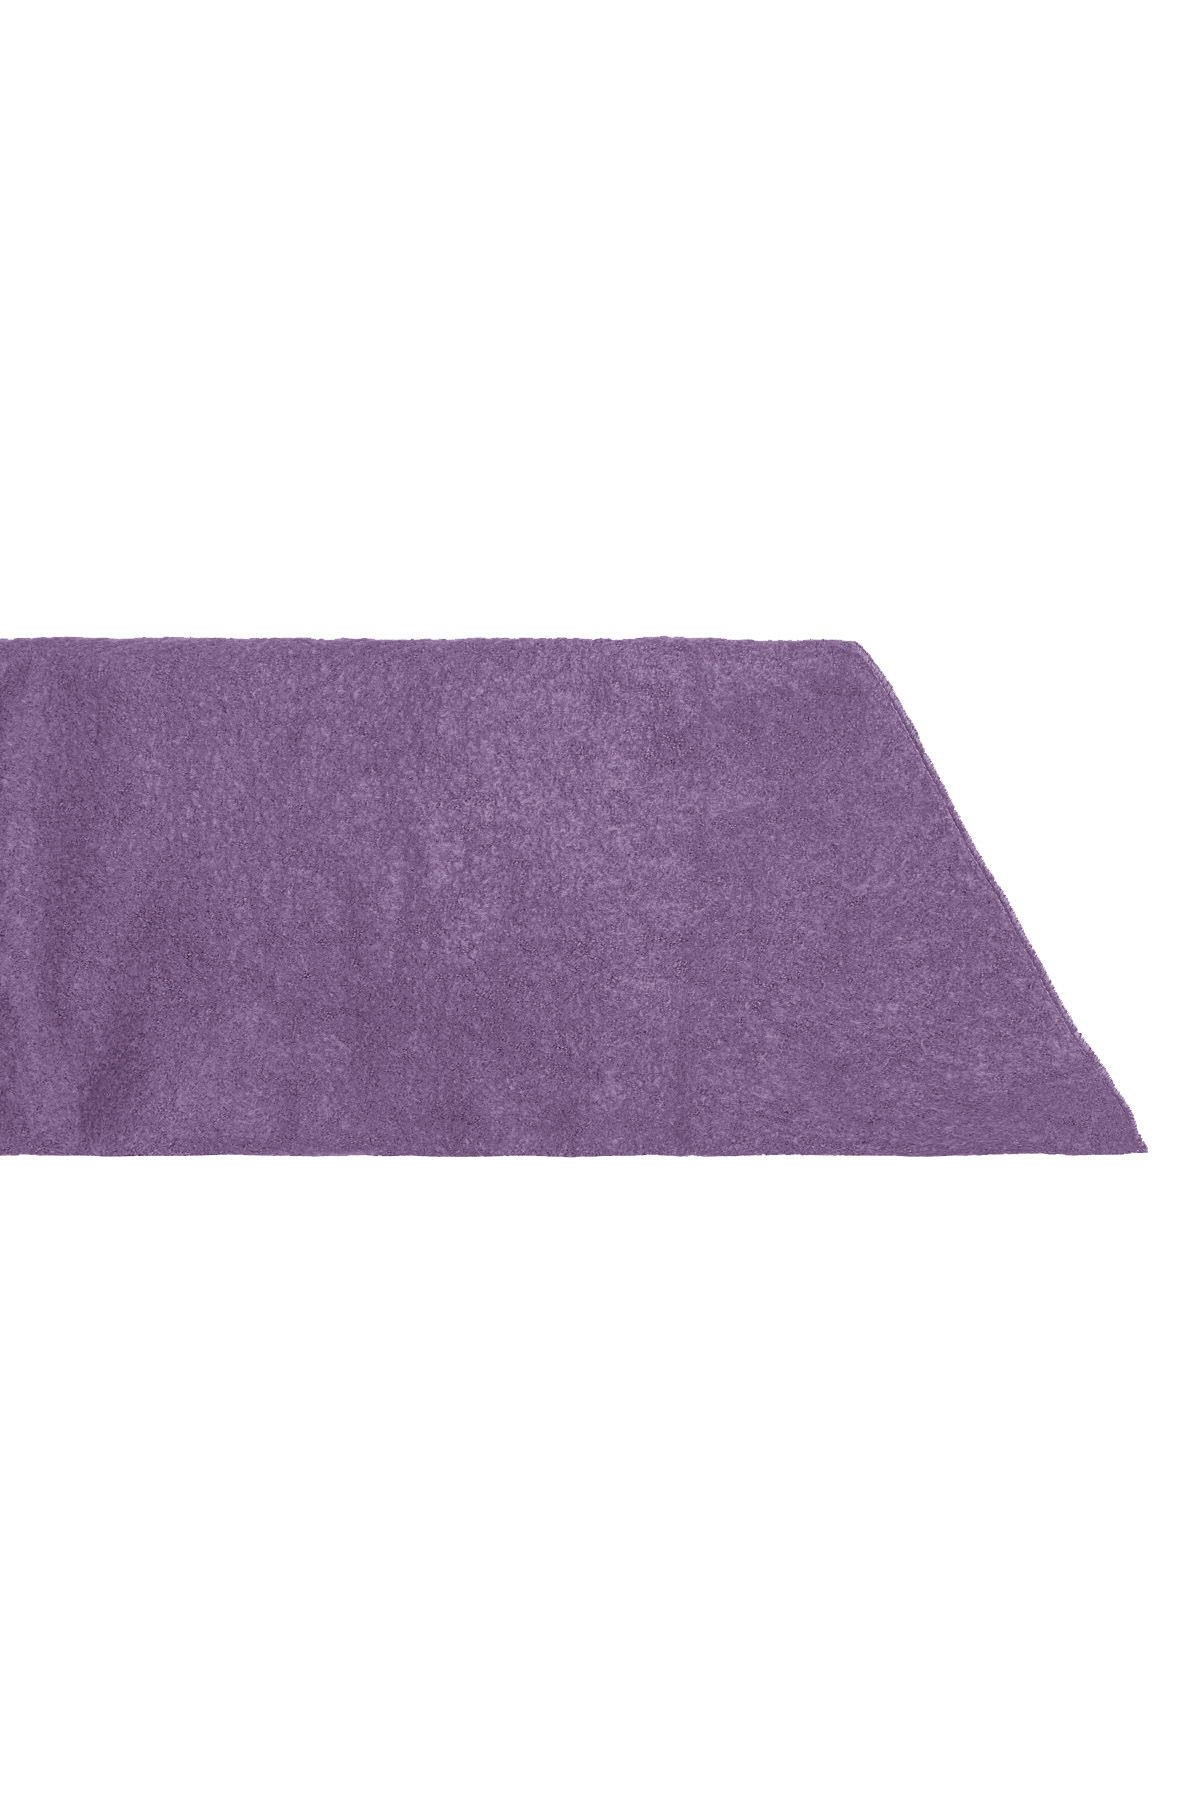 Single-colored winter scarf - purple h5 Picture5